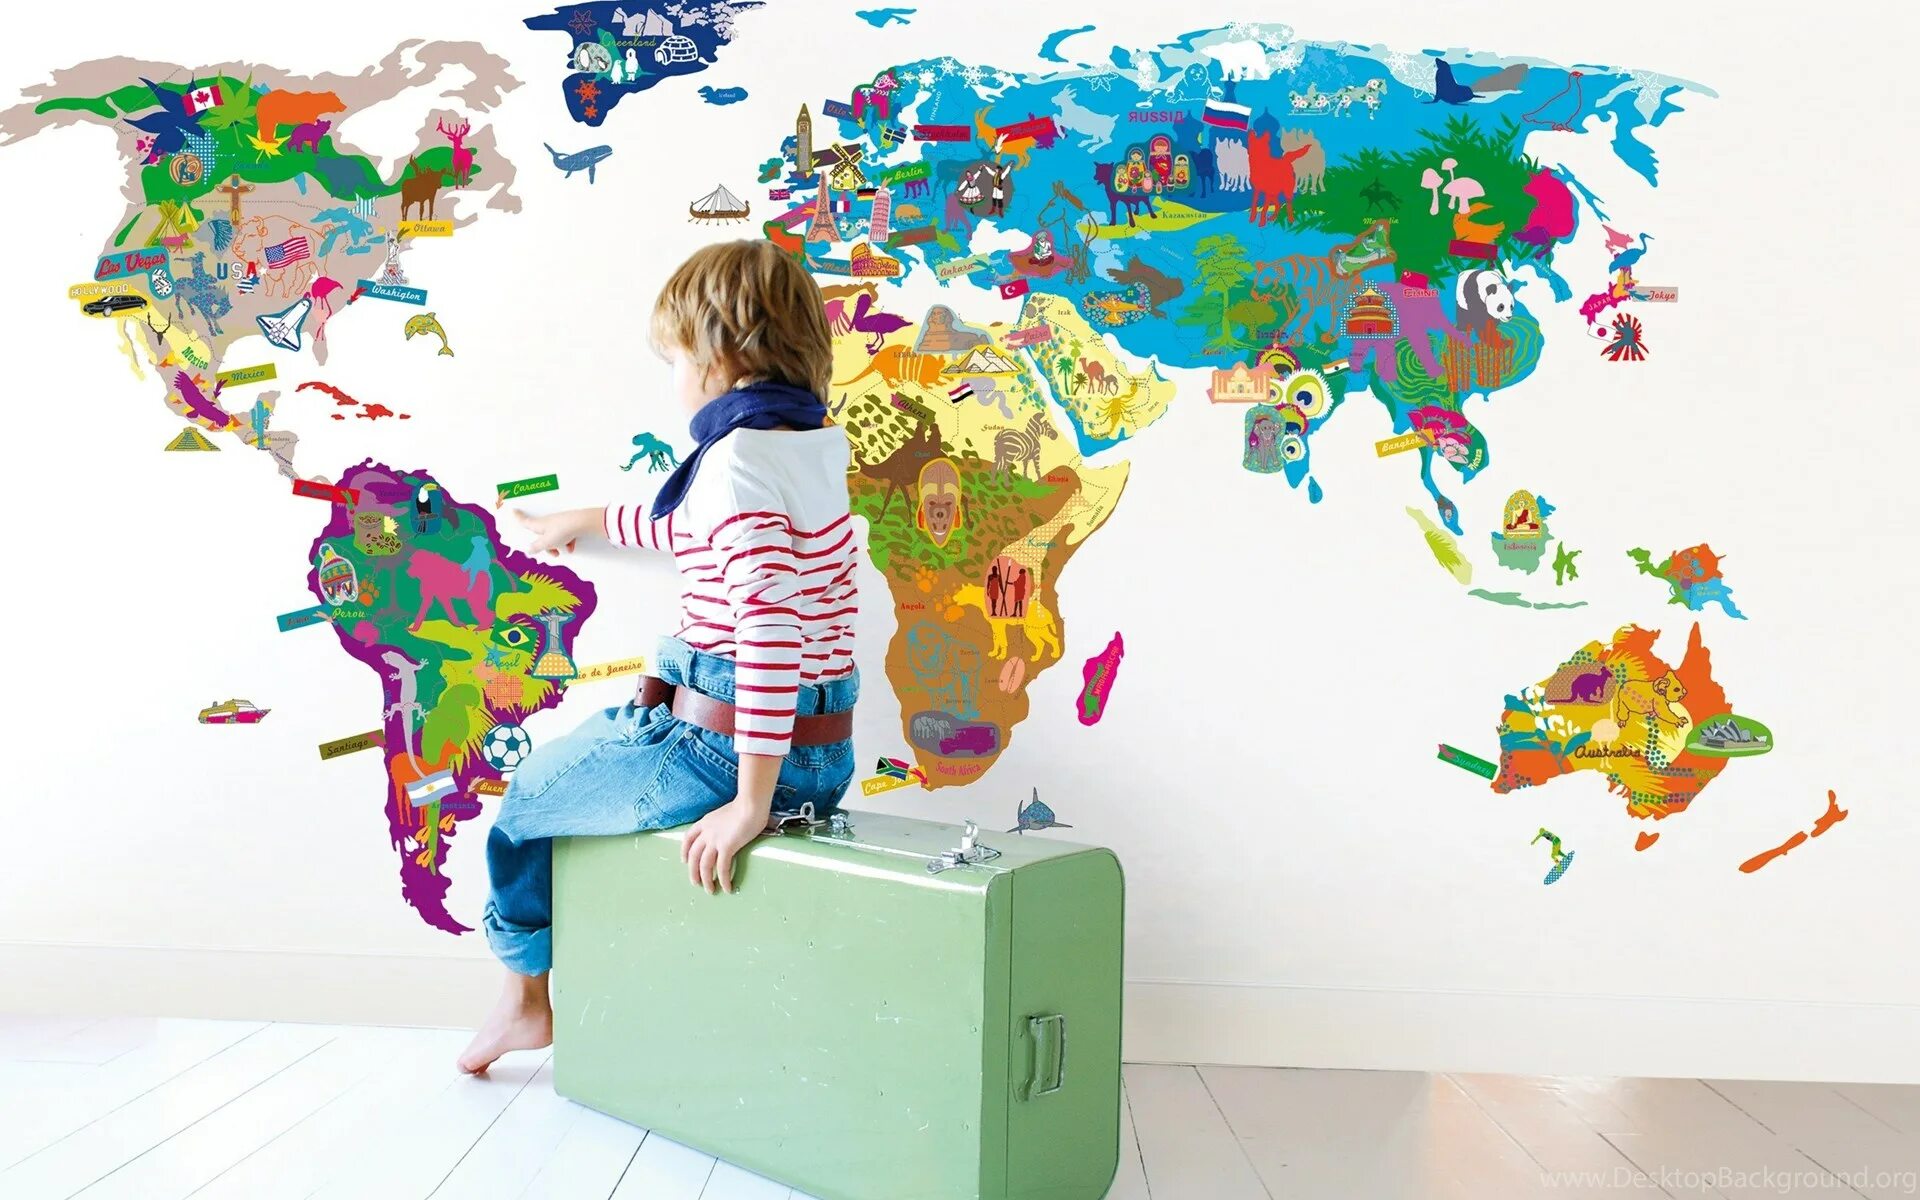 They travel the world. Путешествие по миру для детей. Путешествие с детьми. Путешествия по миру.